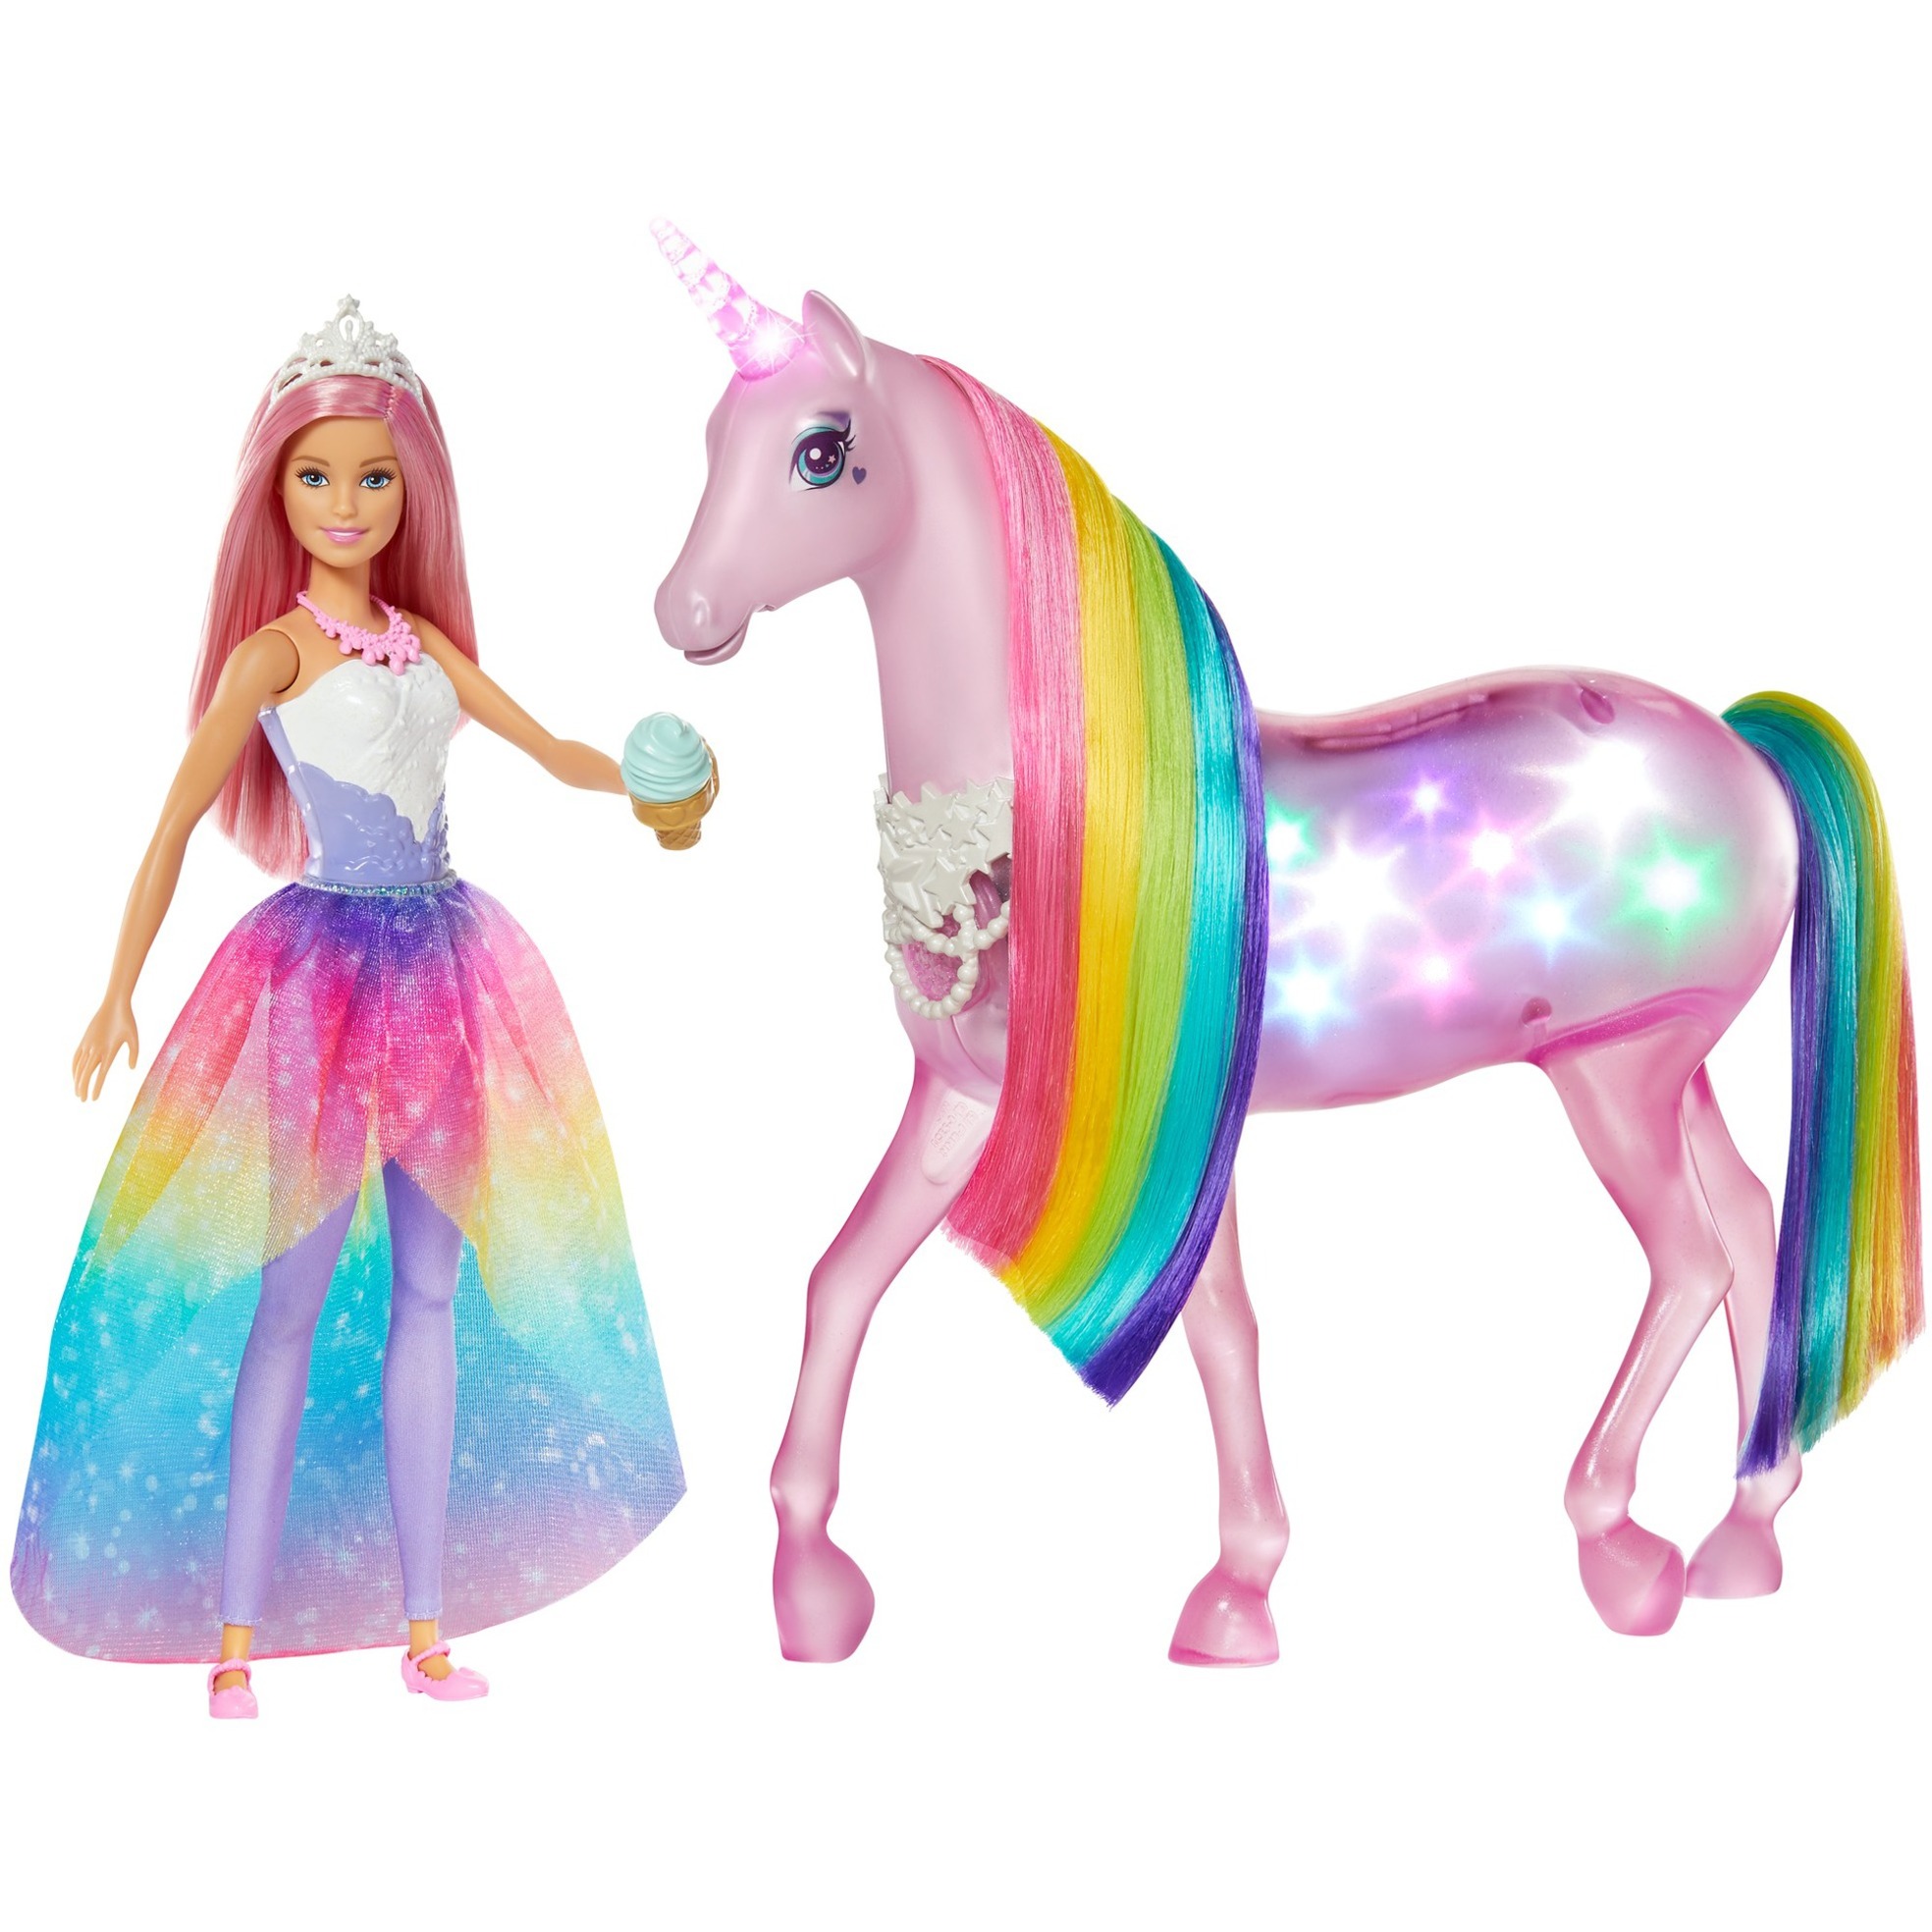 Image of Alternate - Barbie Dreamtopia Magisches Zauberlicht Einhorn, Puppe online einkaufen bei Alternate